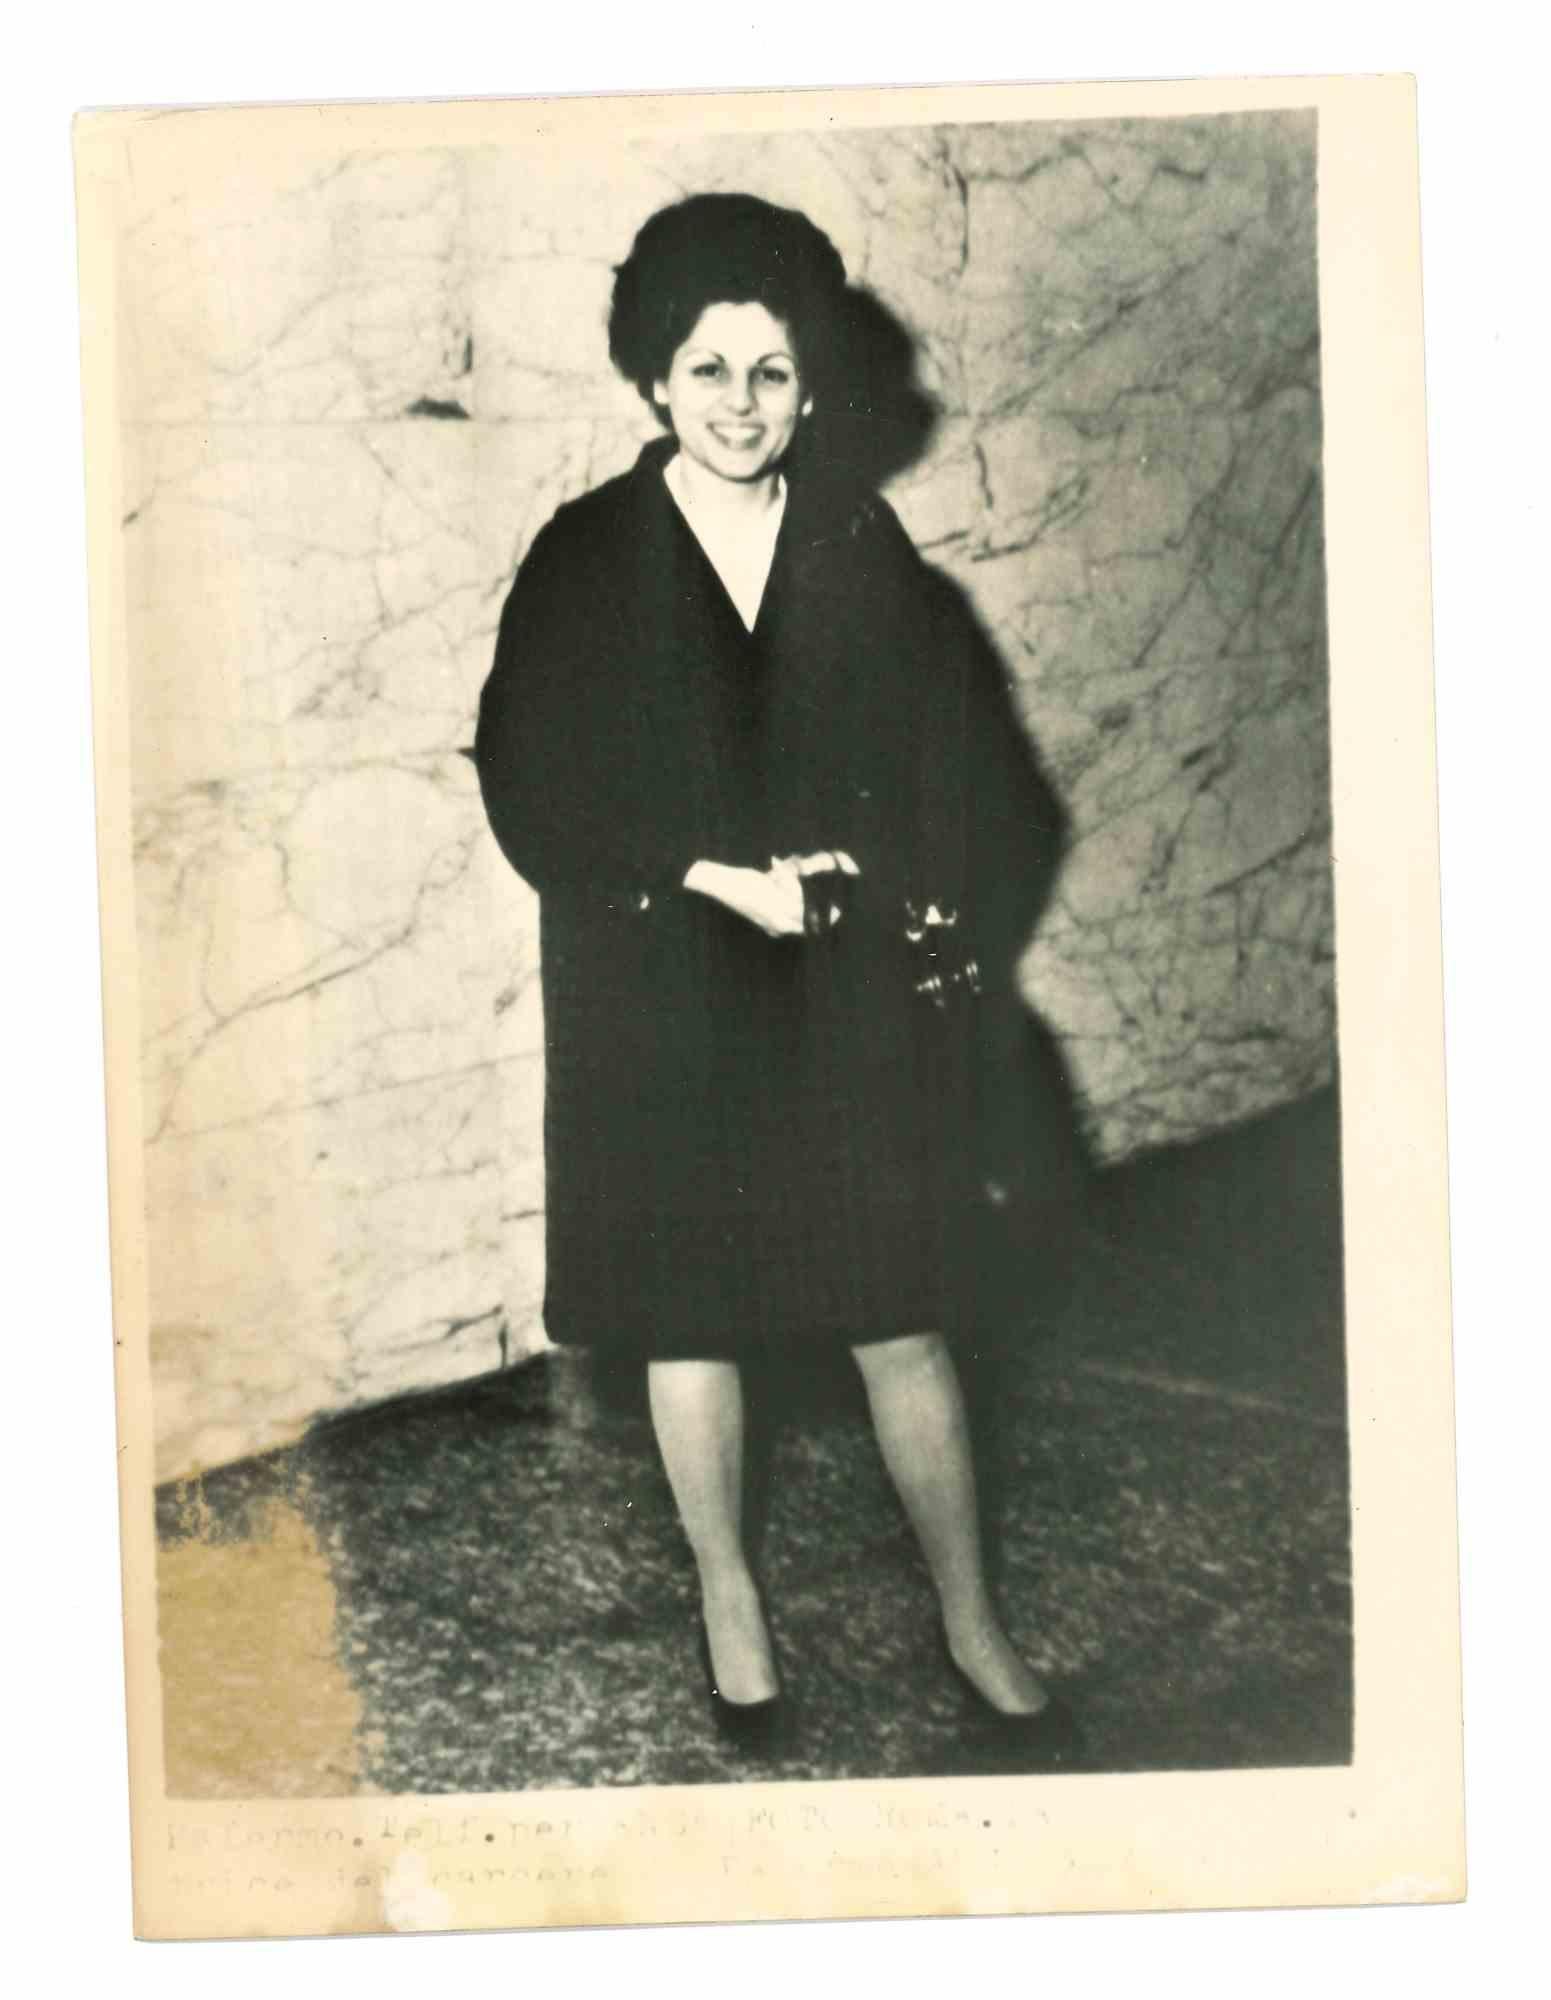 Unknown Figurative Photograph - Angela Faramo - Vice President of Palermian Prison - 1970s